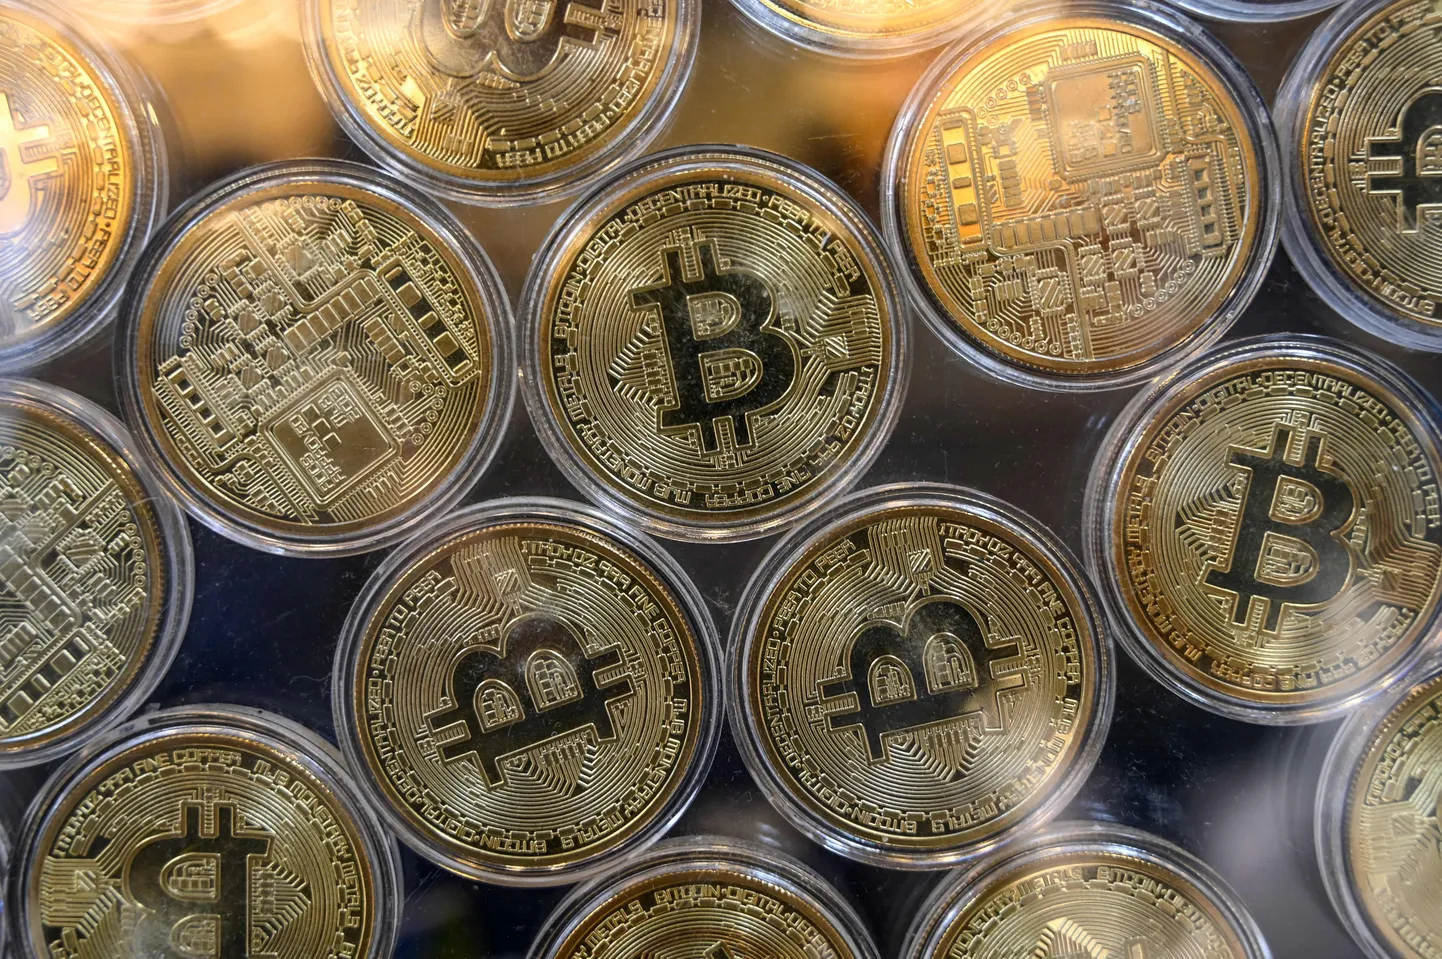 Bitcoini tähisega mündid